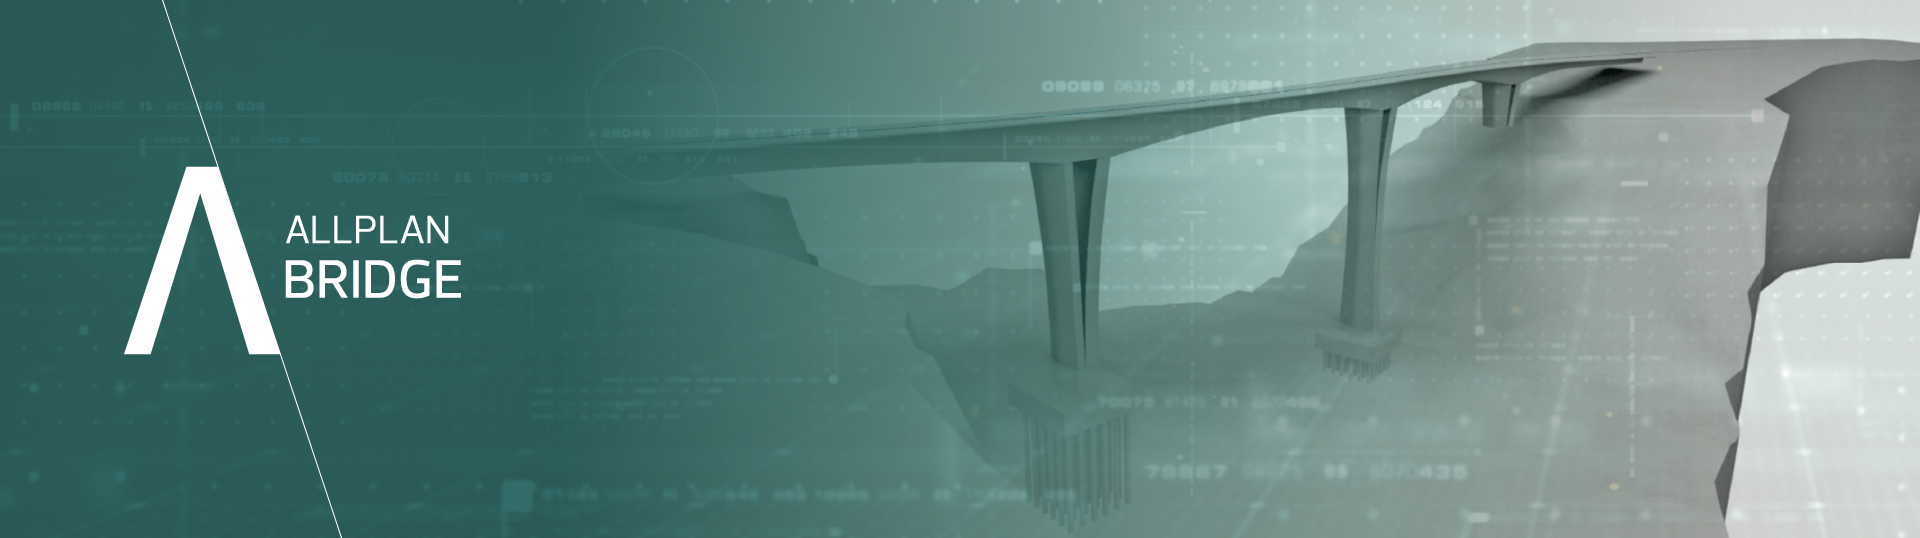 Zobacz prezentację Allplan Bridge z infraMOST 2021